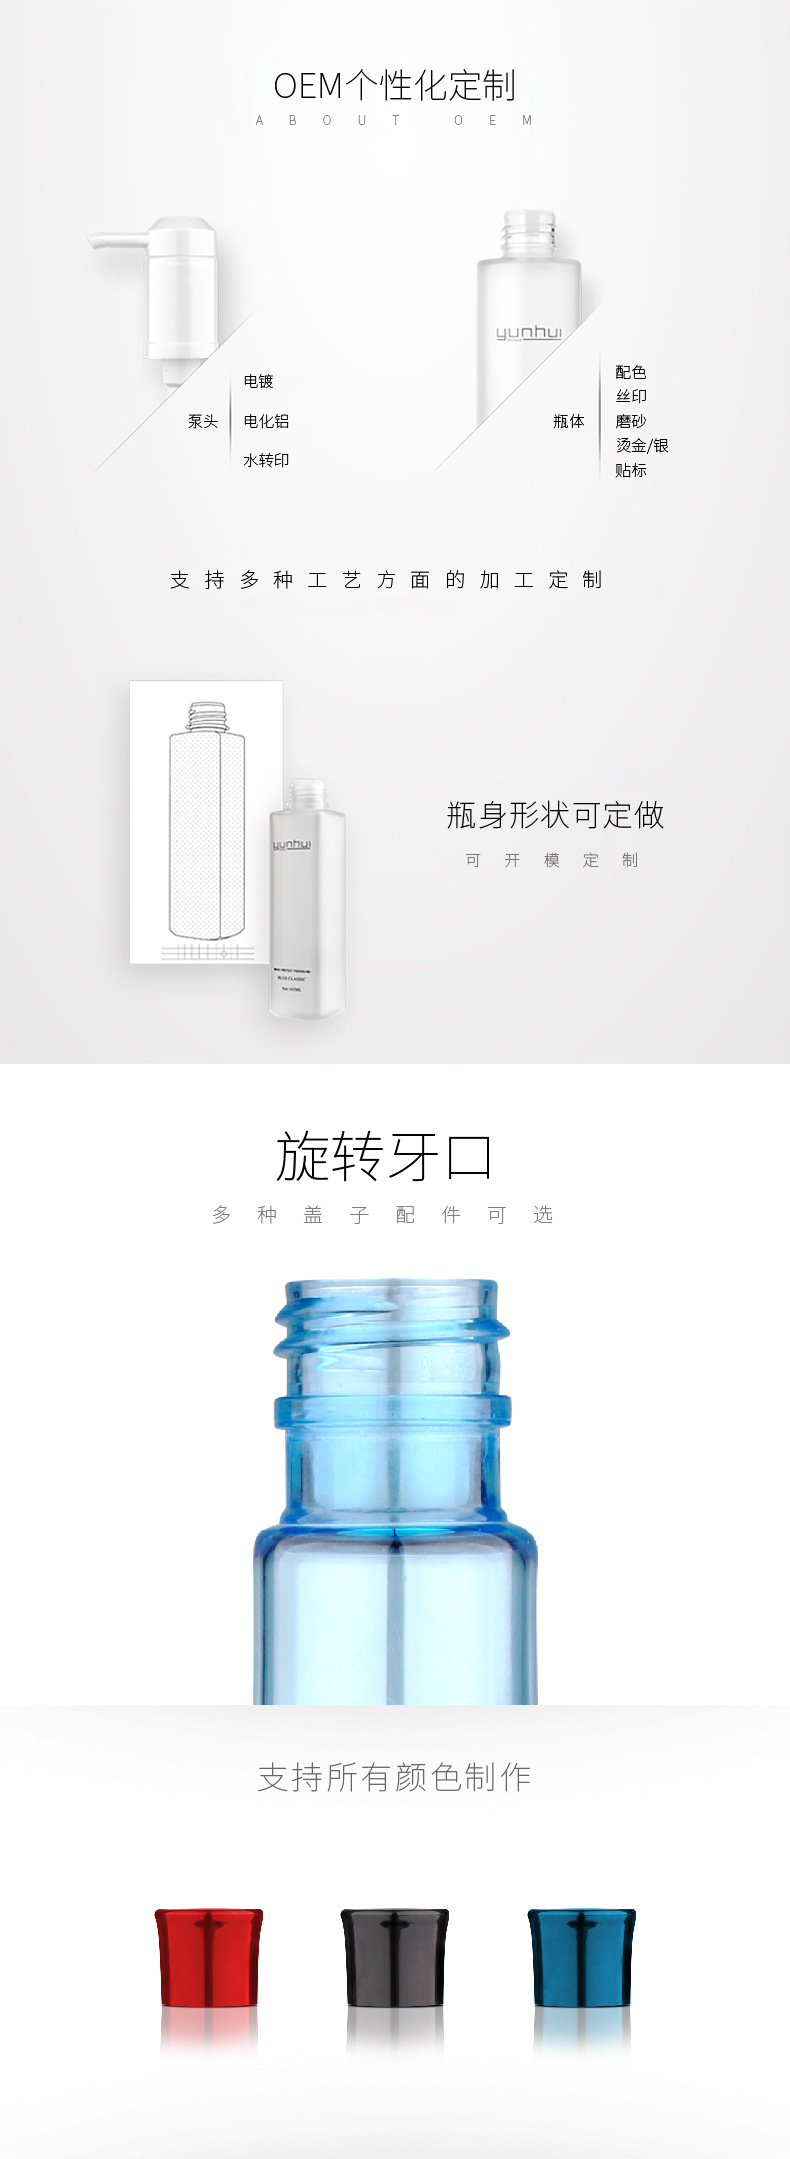 110 80ml洗护用品试用装旅行装PET塑料包装瓶